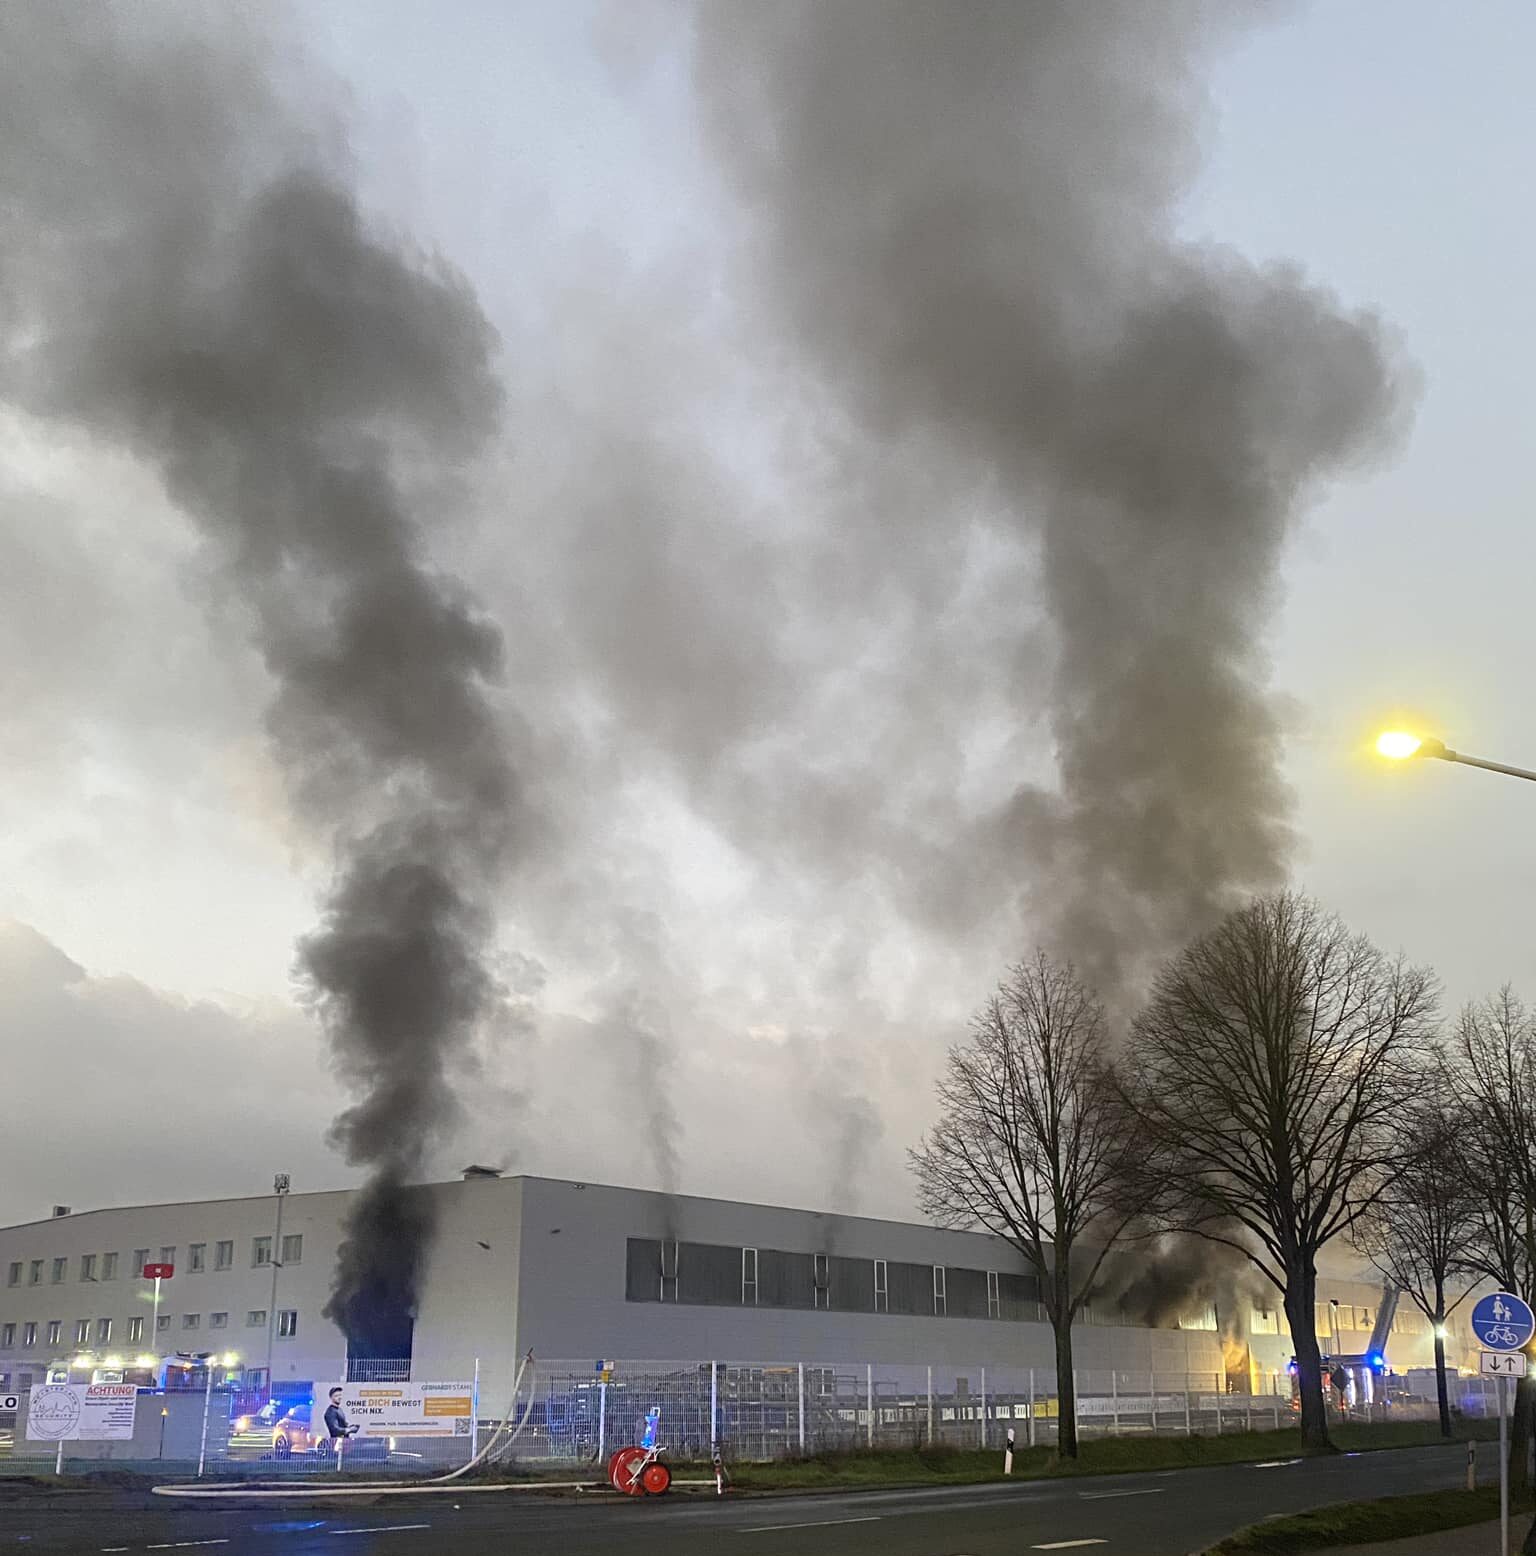 Großbrand in Galvanik-Anlage in Werl – Flammen schossen 50 Meter hoch